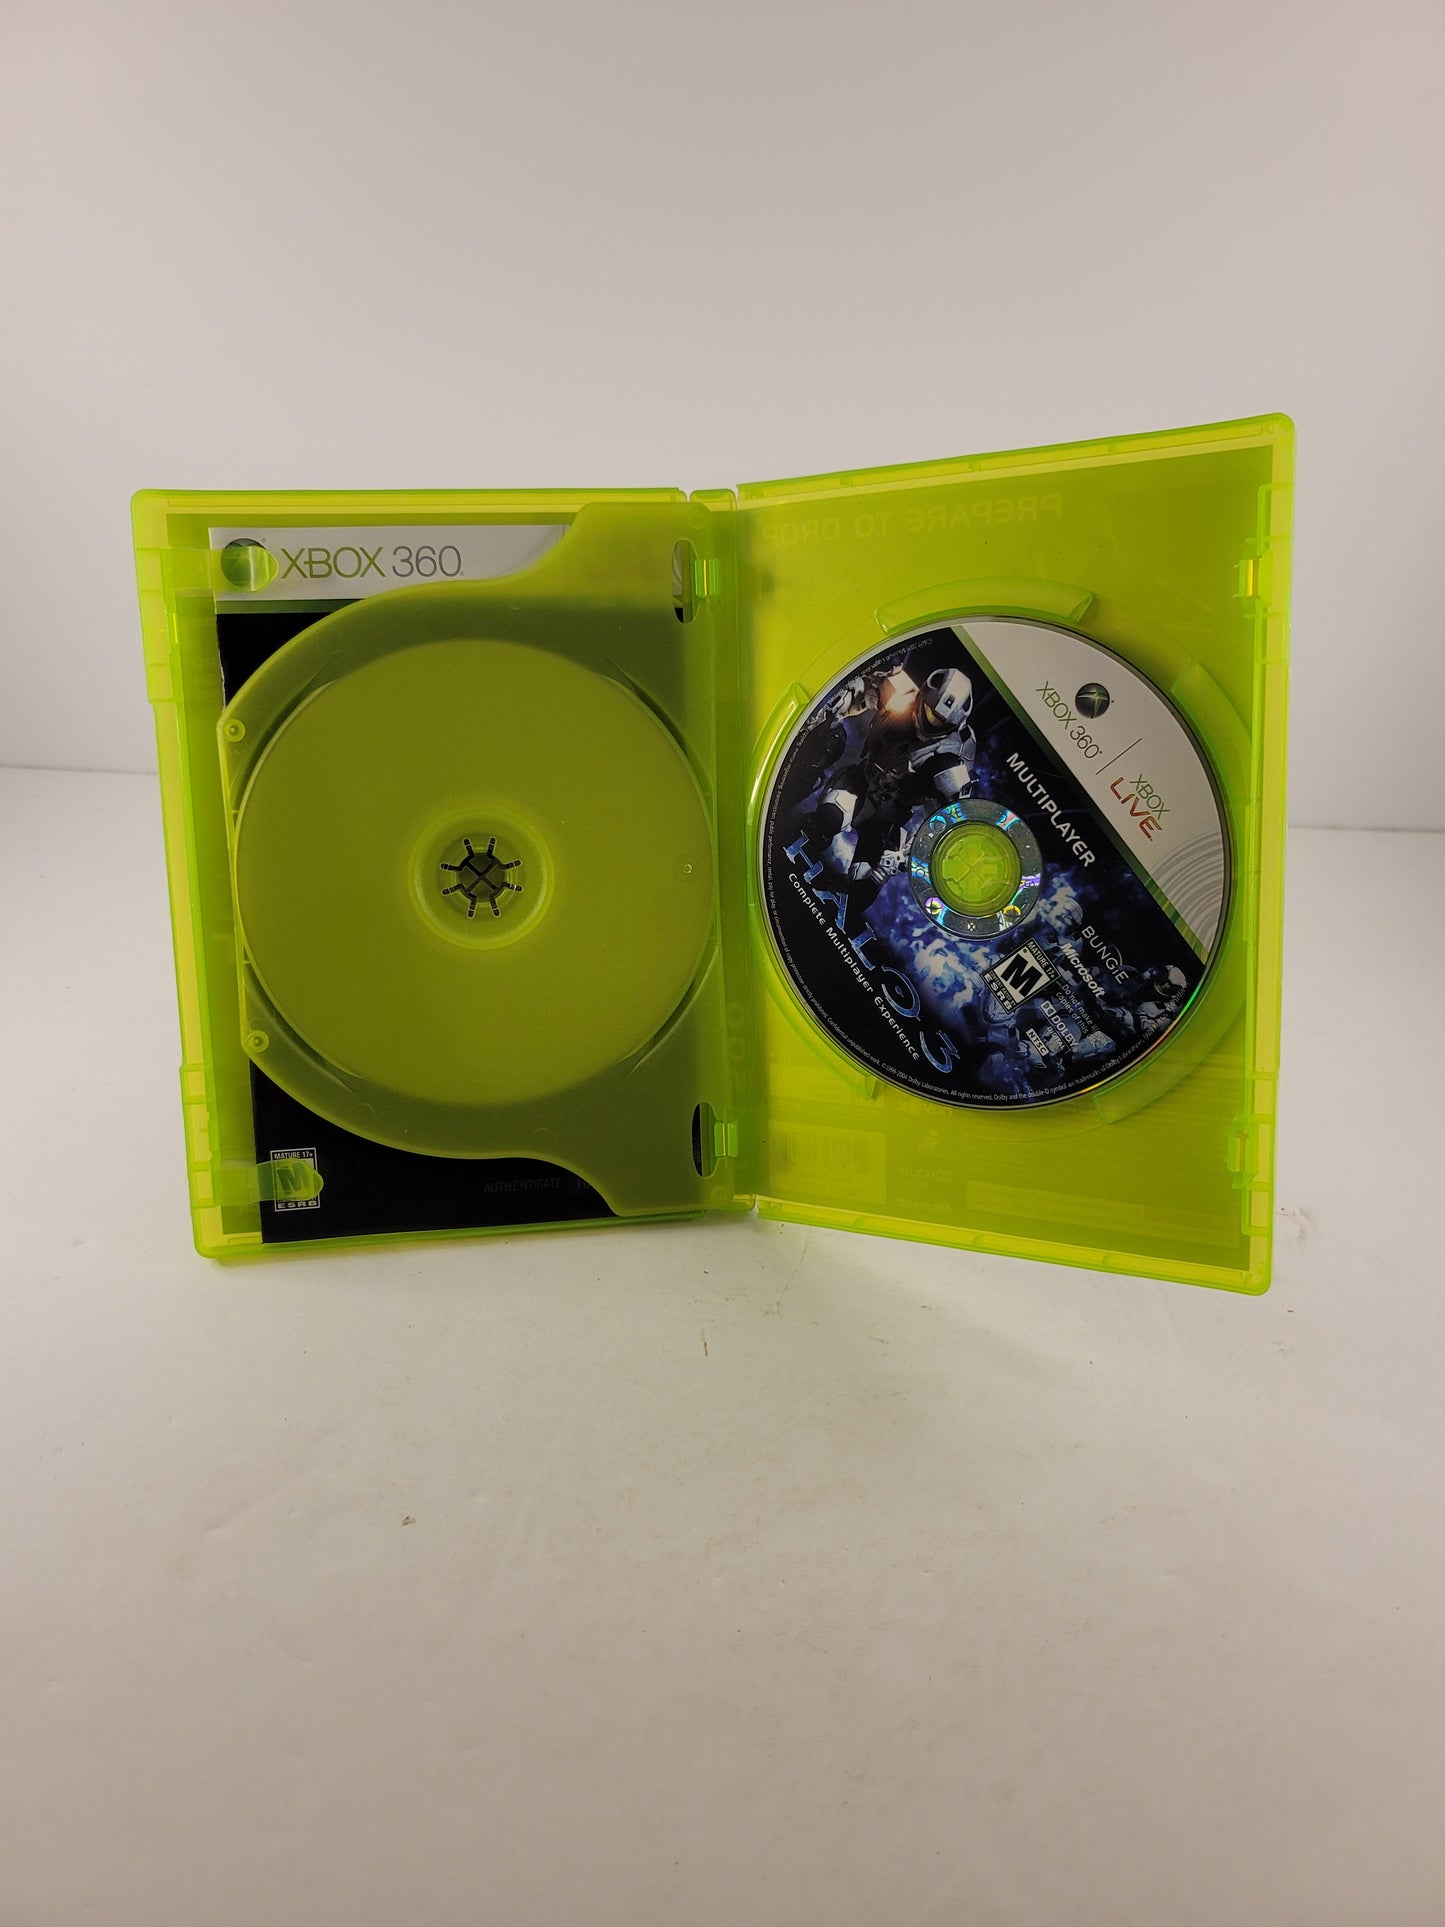 HALO ODST - Xbox 360